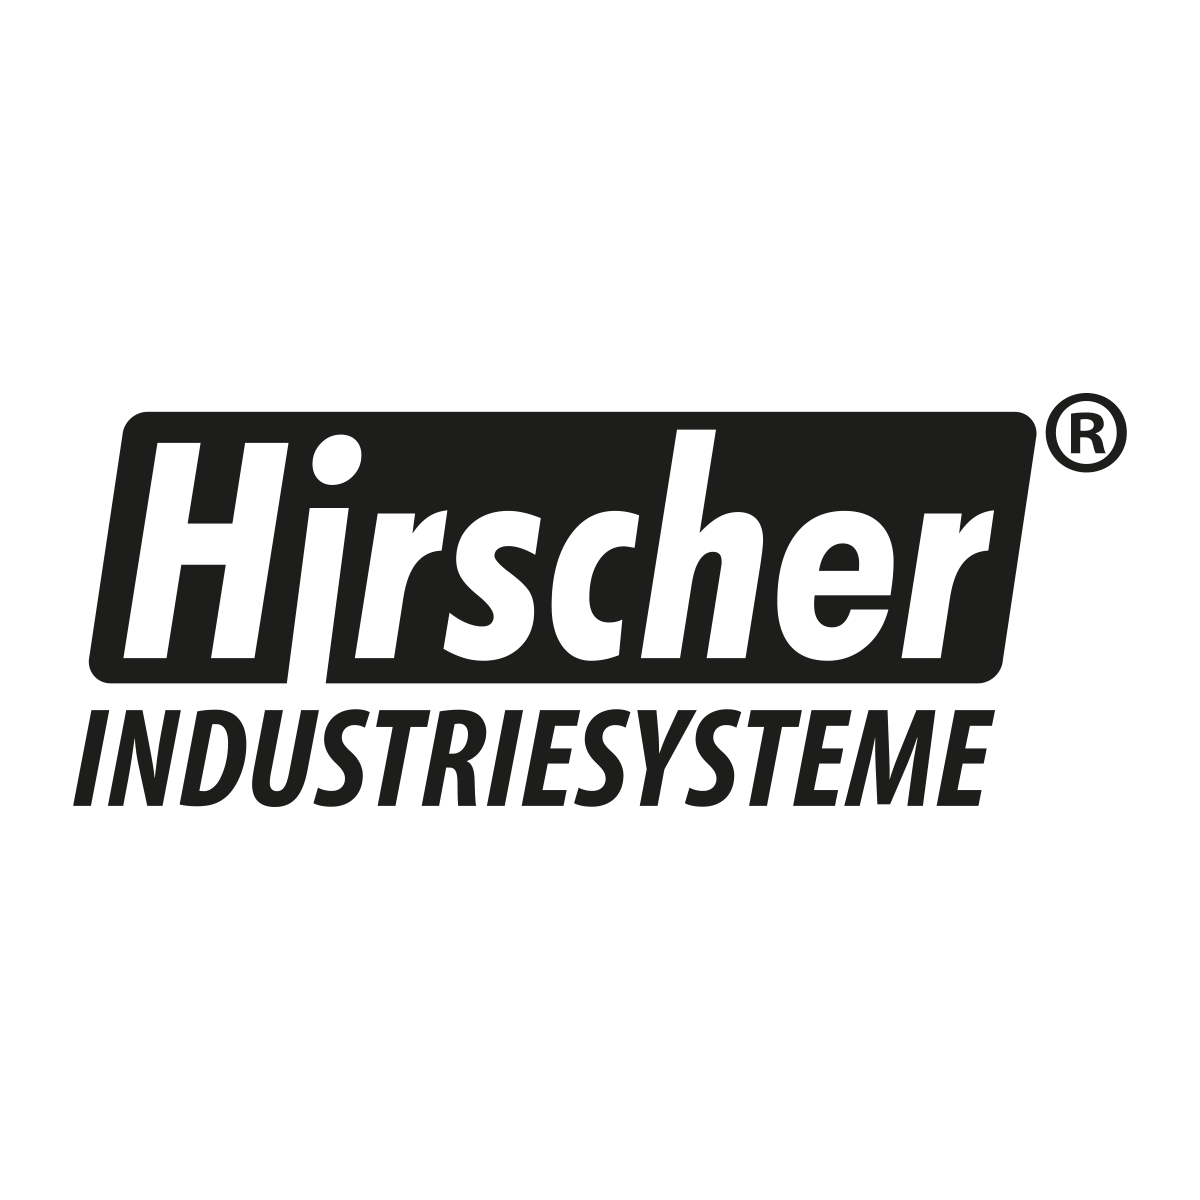 (c) Hirscher-systems.com